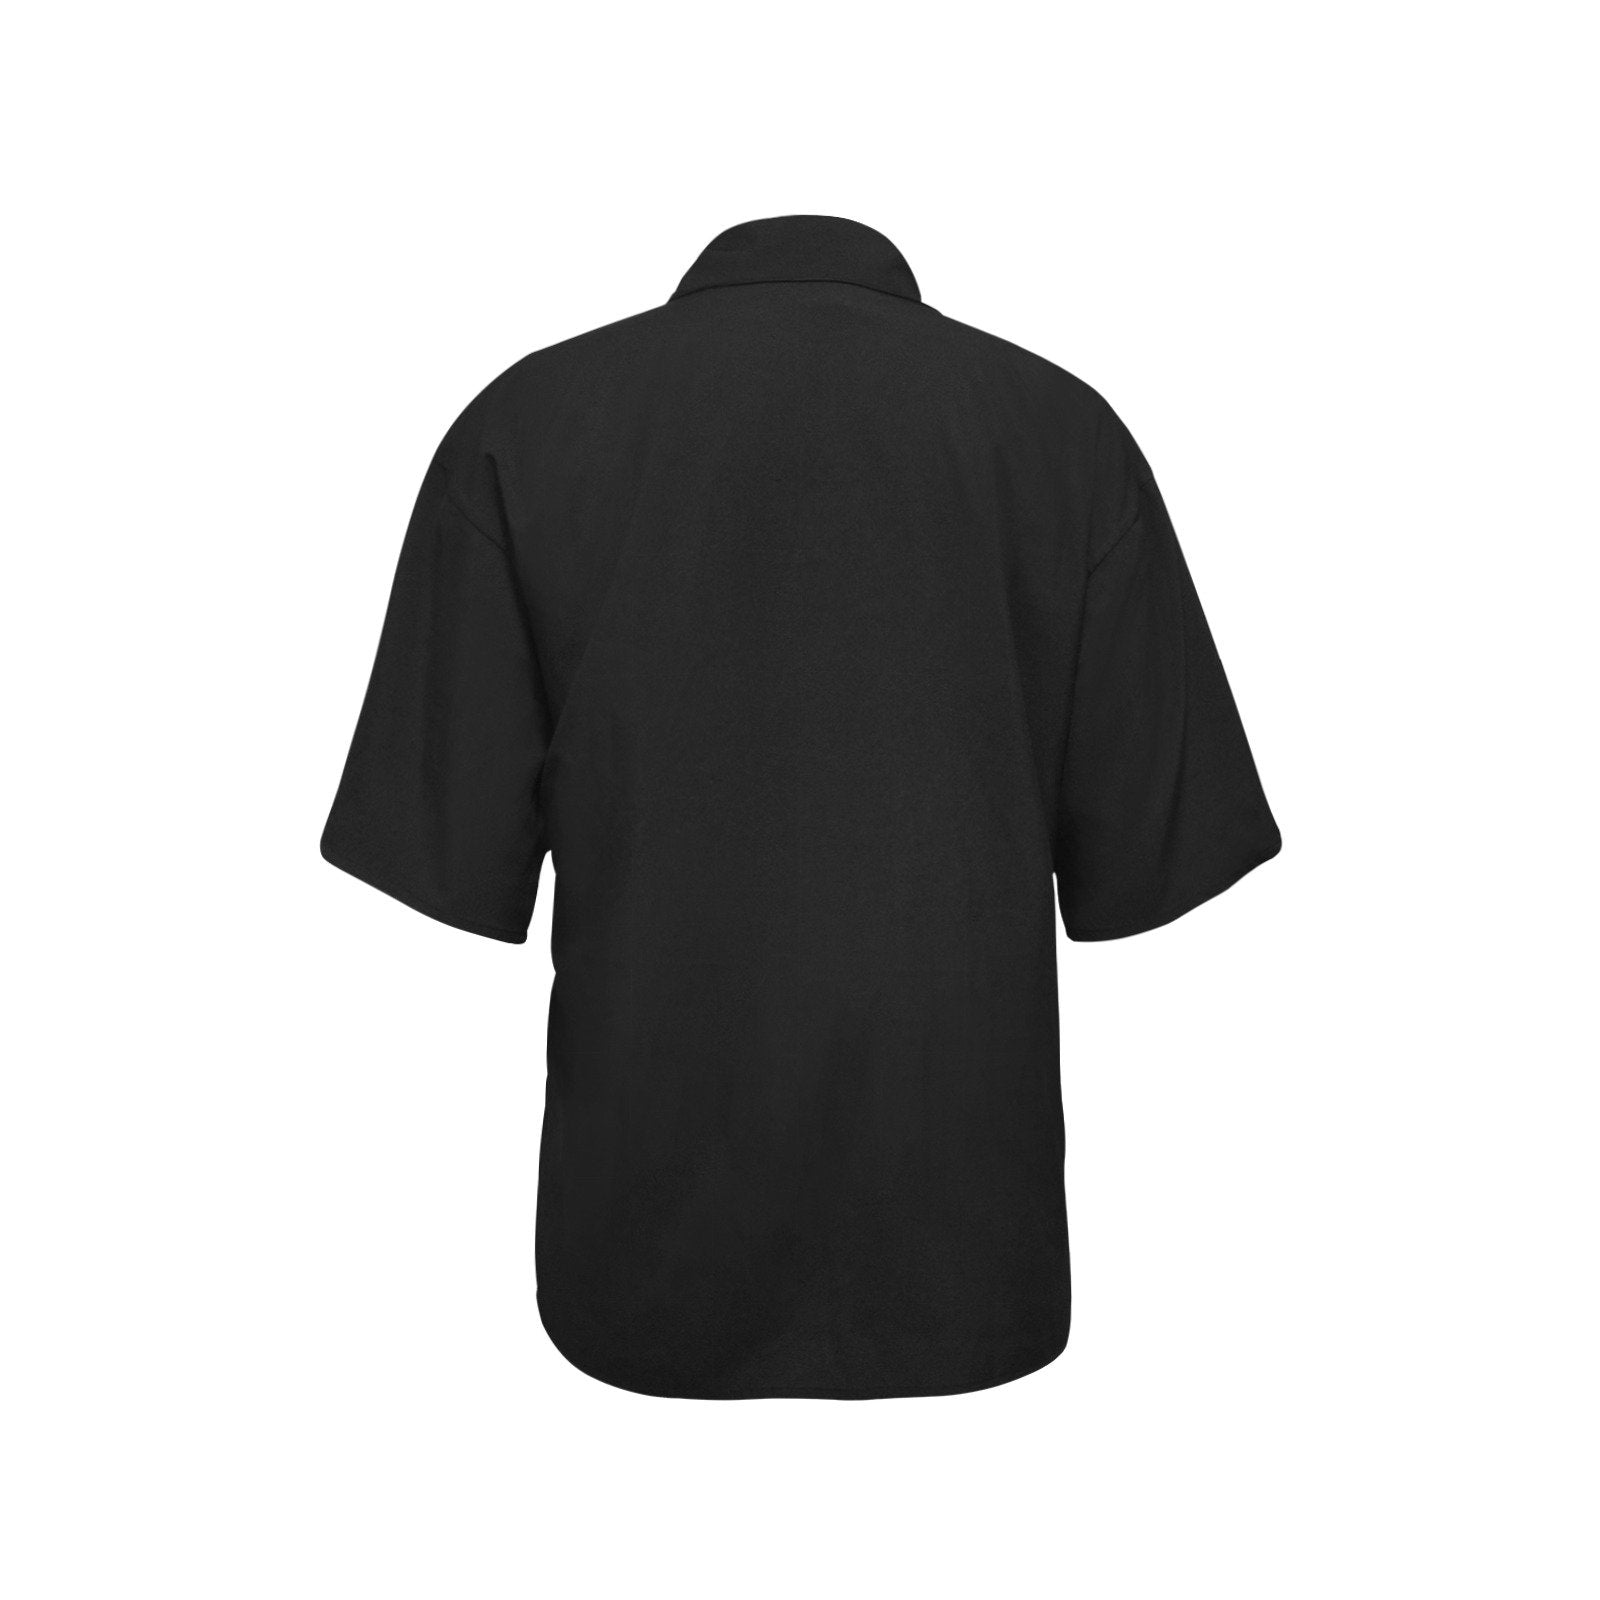 49 Dzine Logomark Dress Code All Over Print Hawaiian Shirt for Women (Model T58) Hawaiian Shirt for Women (T58) e-joyer 